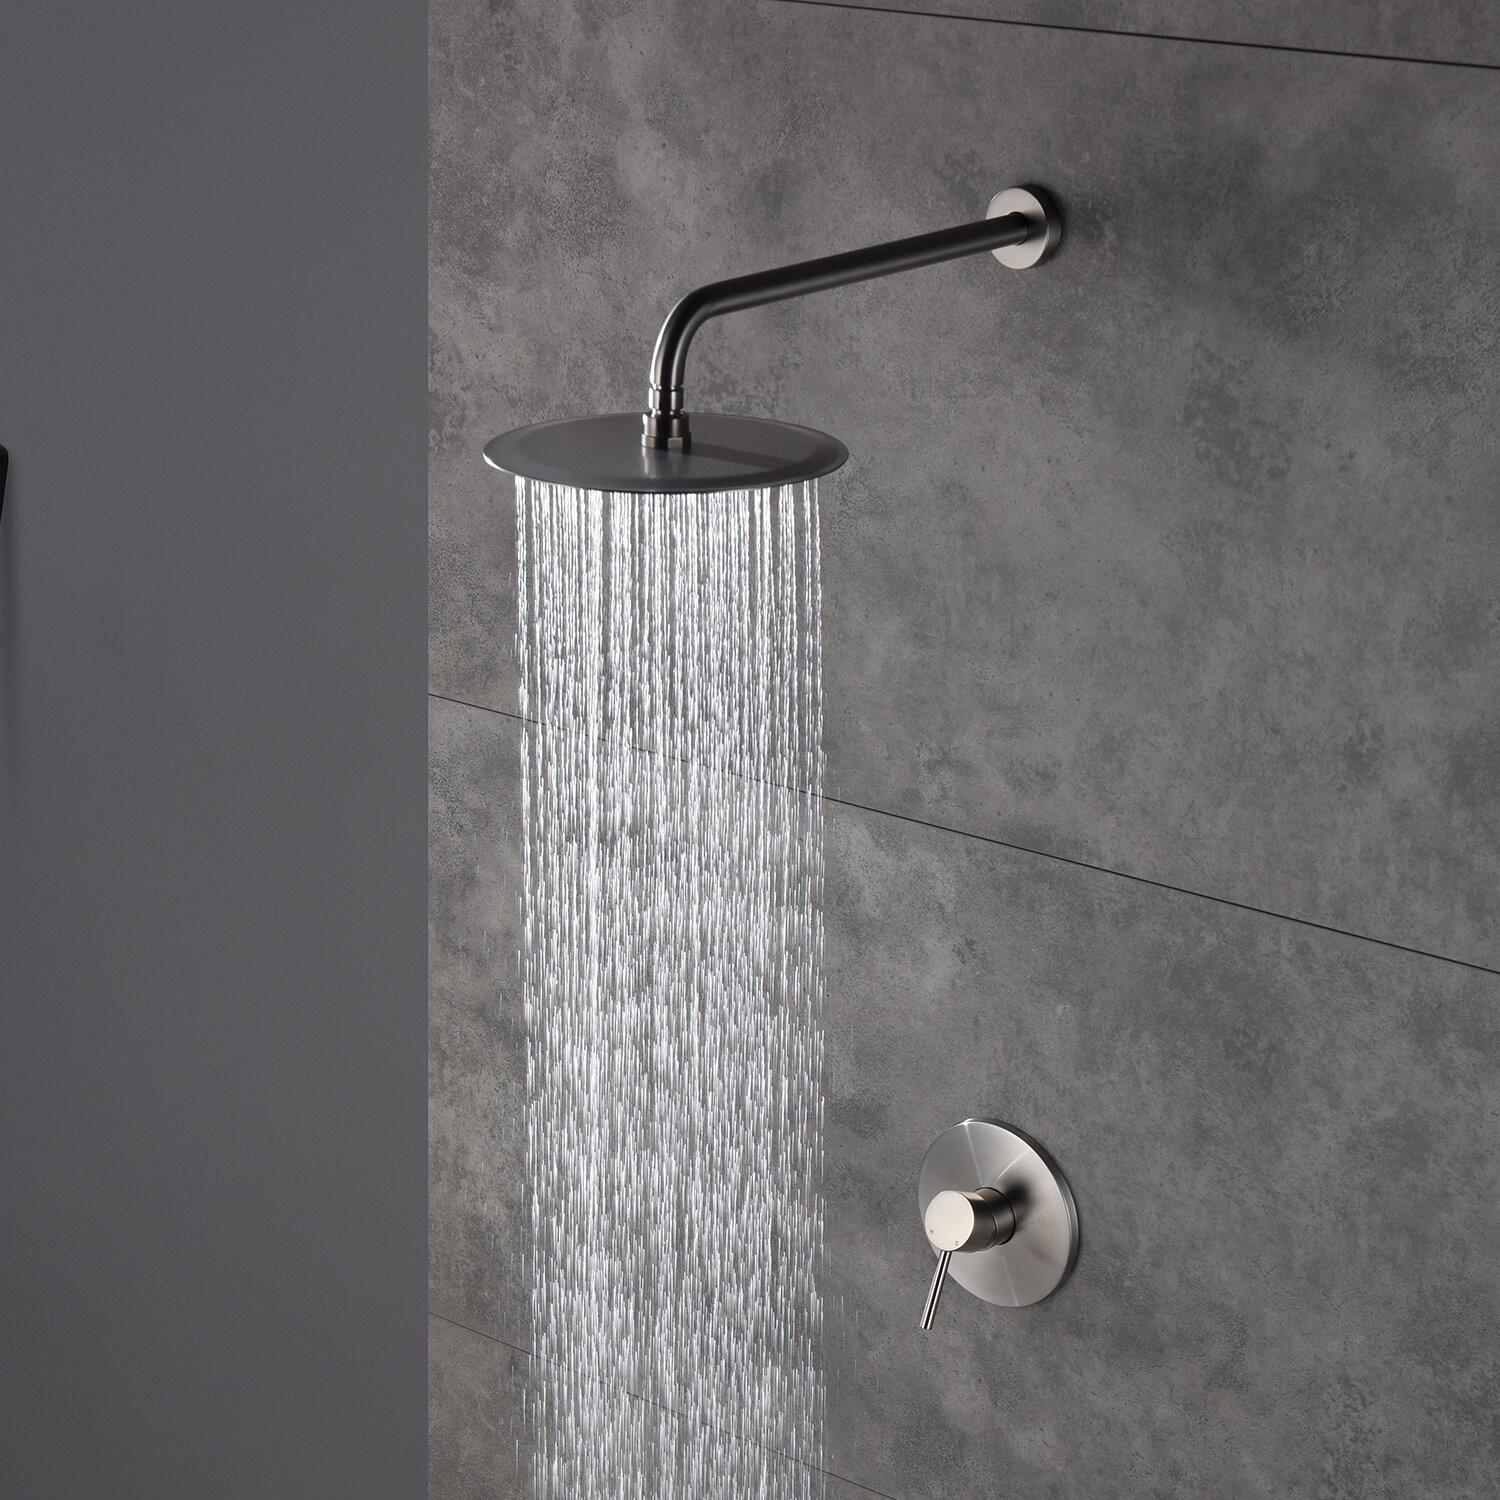 حوض استحمام متوازن الضغط على الحائط من Aquacubic ونظام دش مع صمام خشن